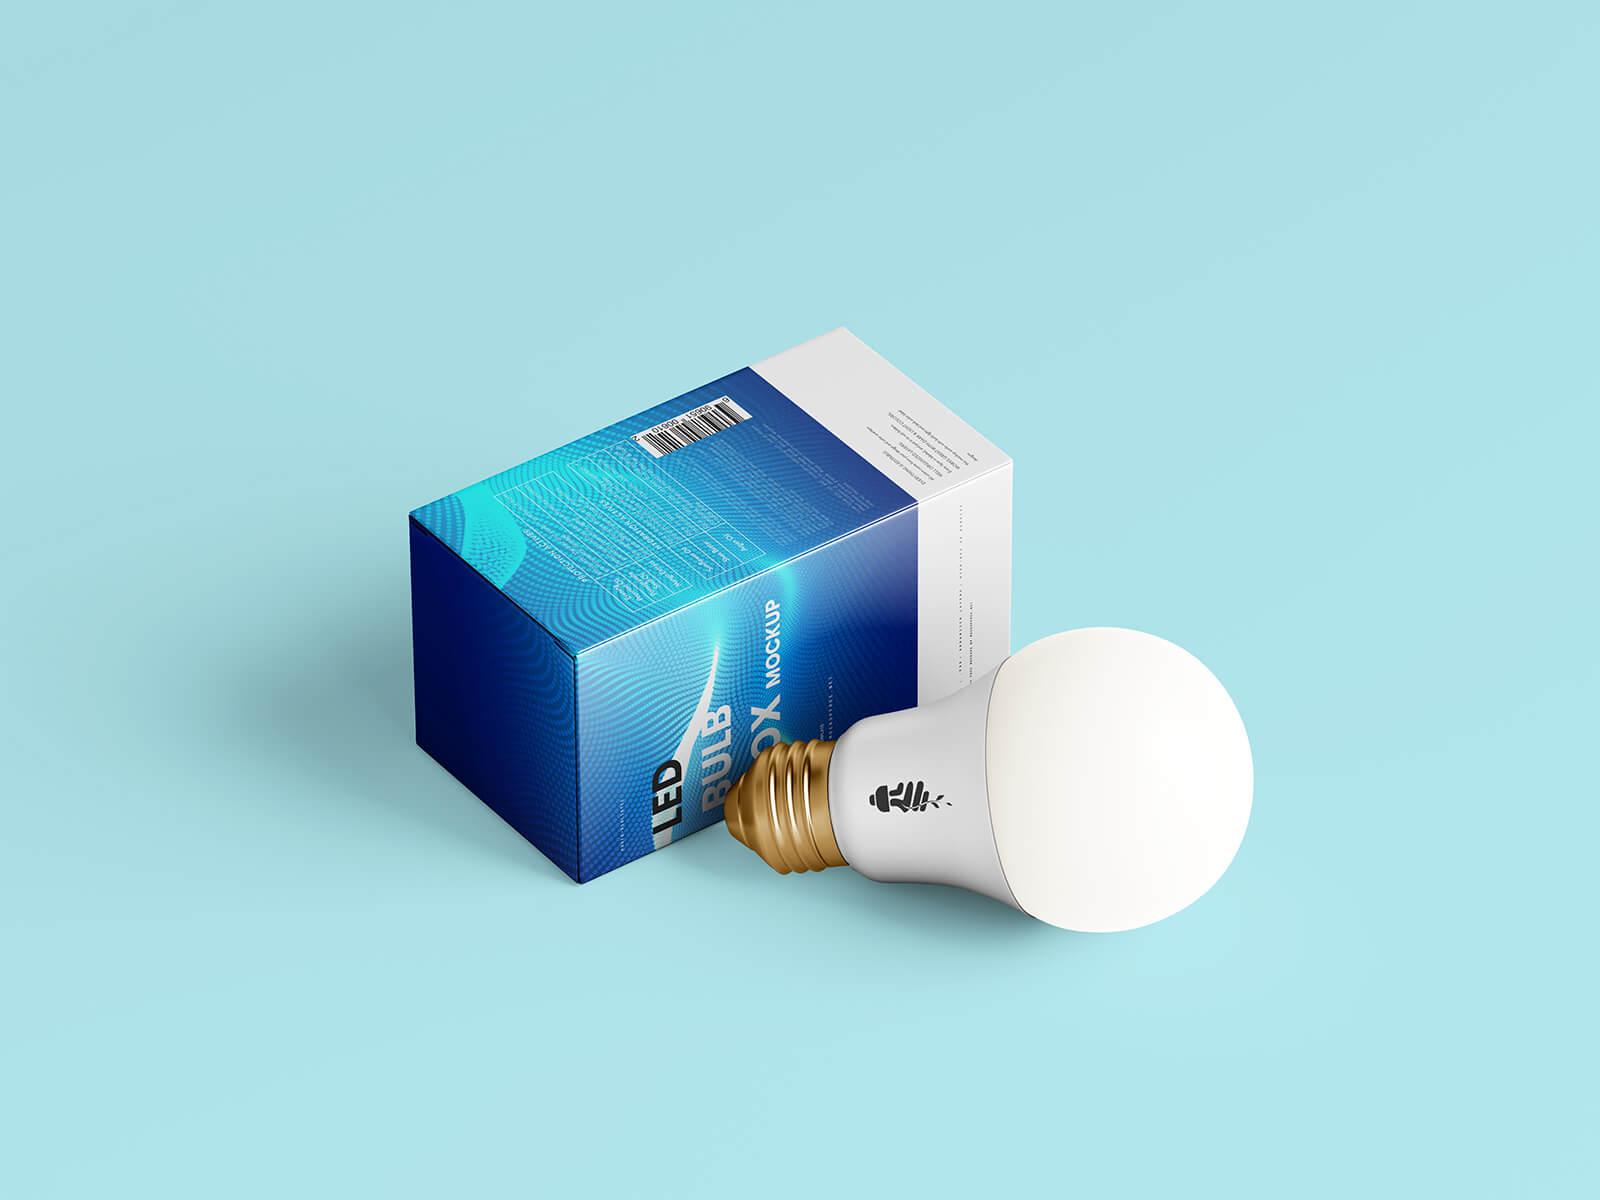 Free LED Light Bulb & Box Mockup PSD